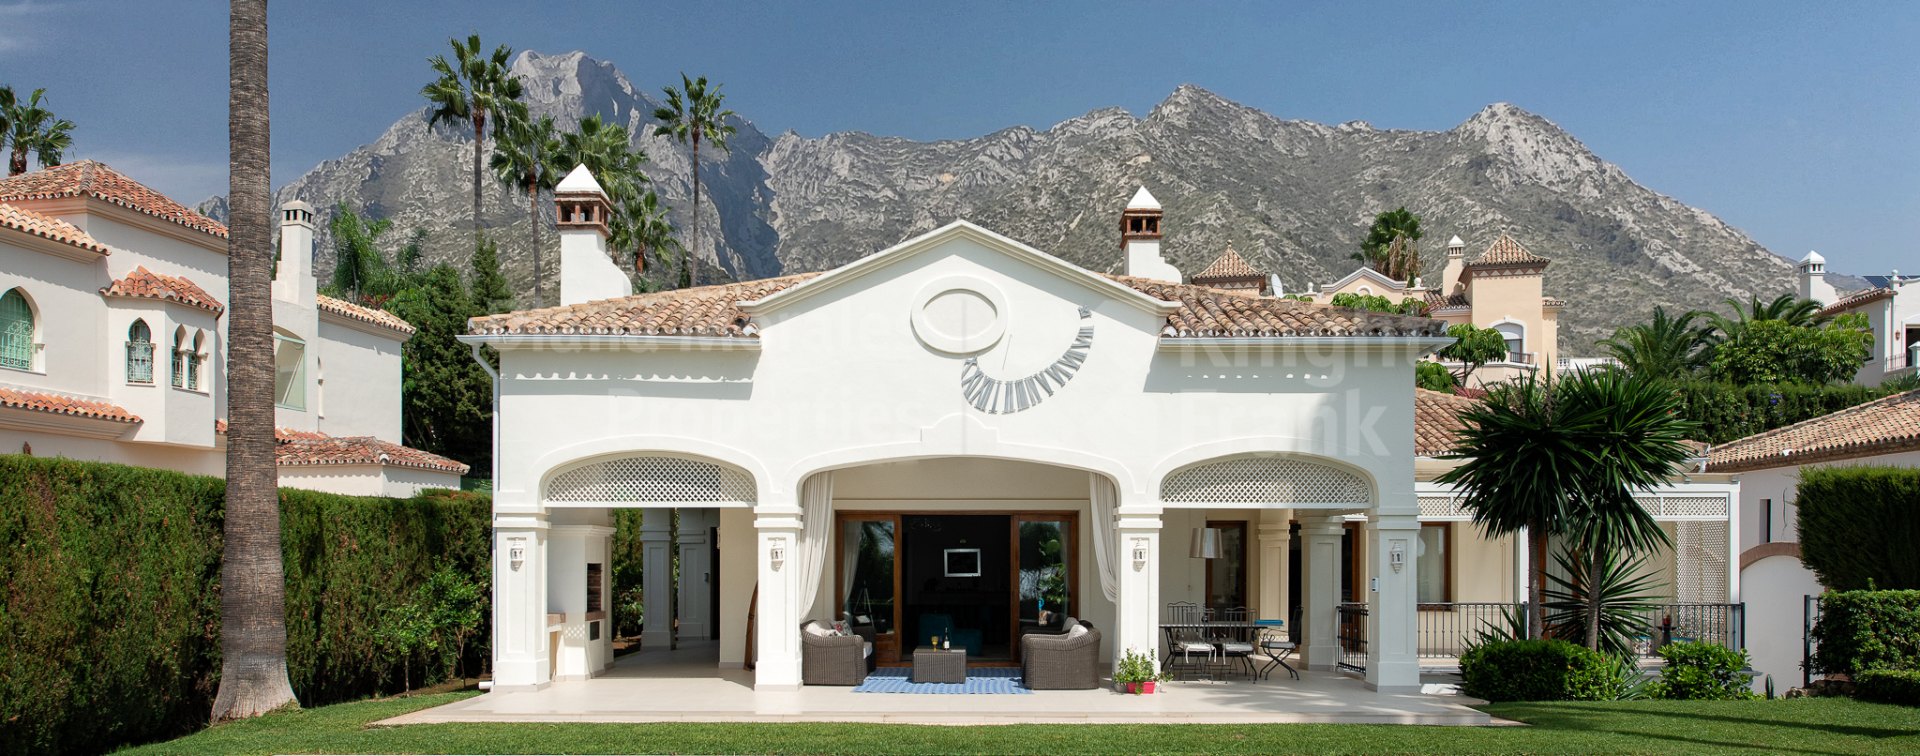 Villa in Sierra Blanca with beautiful views